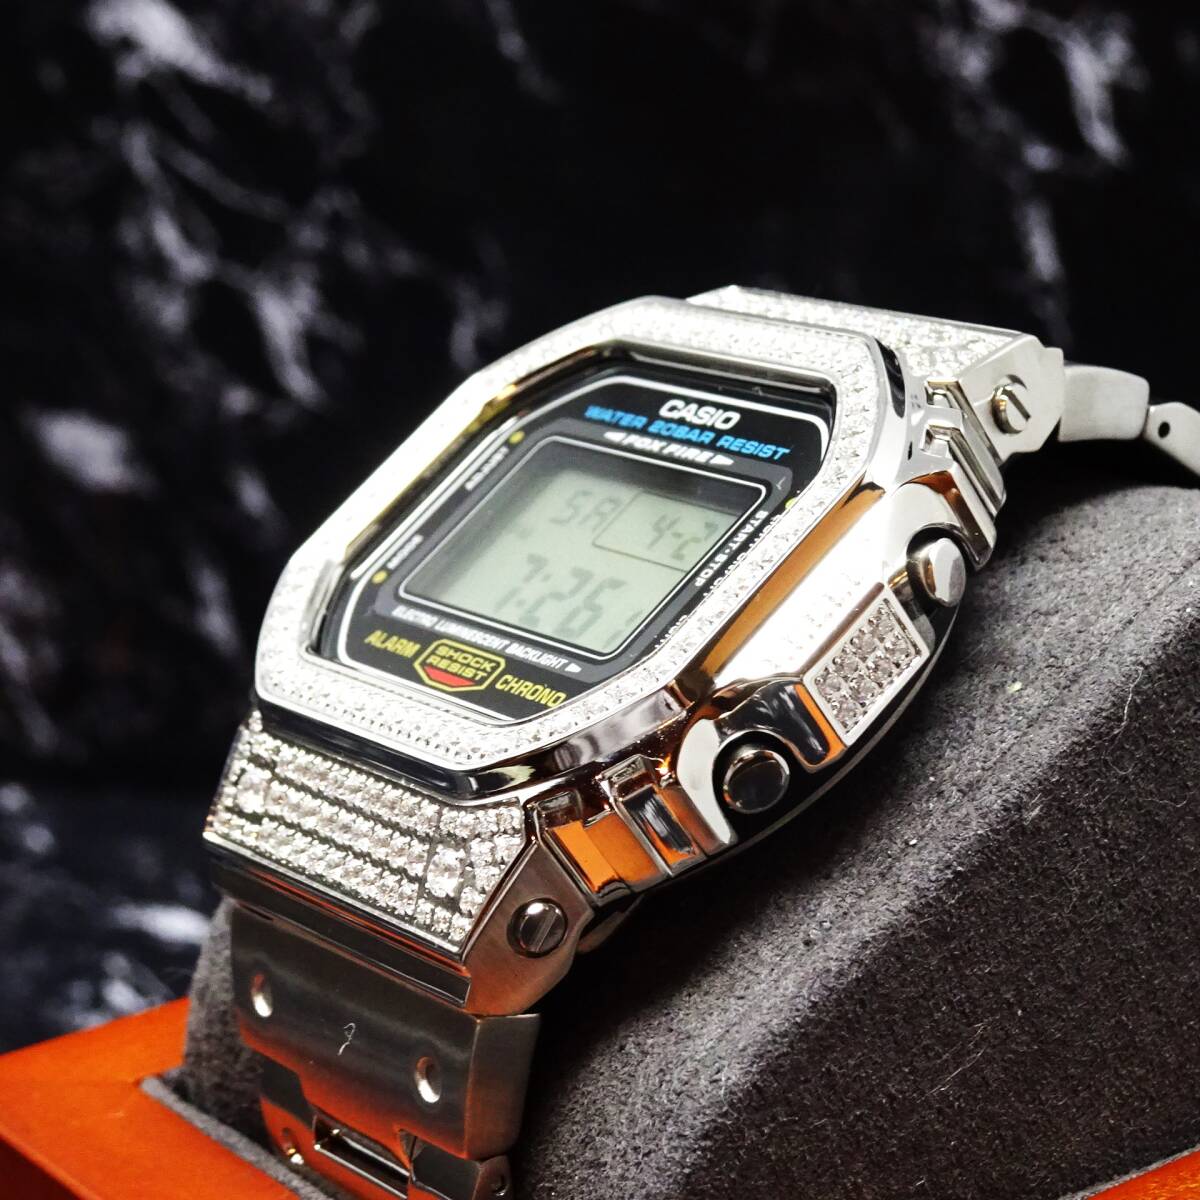 送料無料・新品・Gショックカスタム本体付きDW5600デジタル腕時計ステンレス製ジルコニアベゼル＆ベルト・フルメタルラグジュアリーモデル